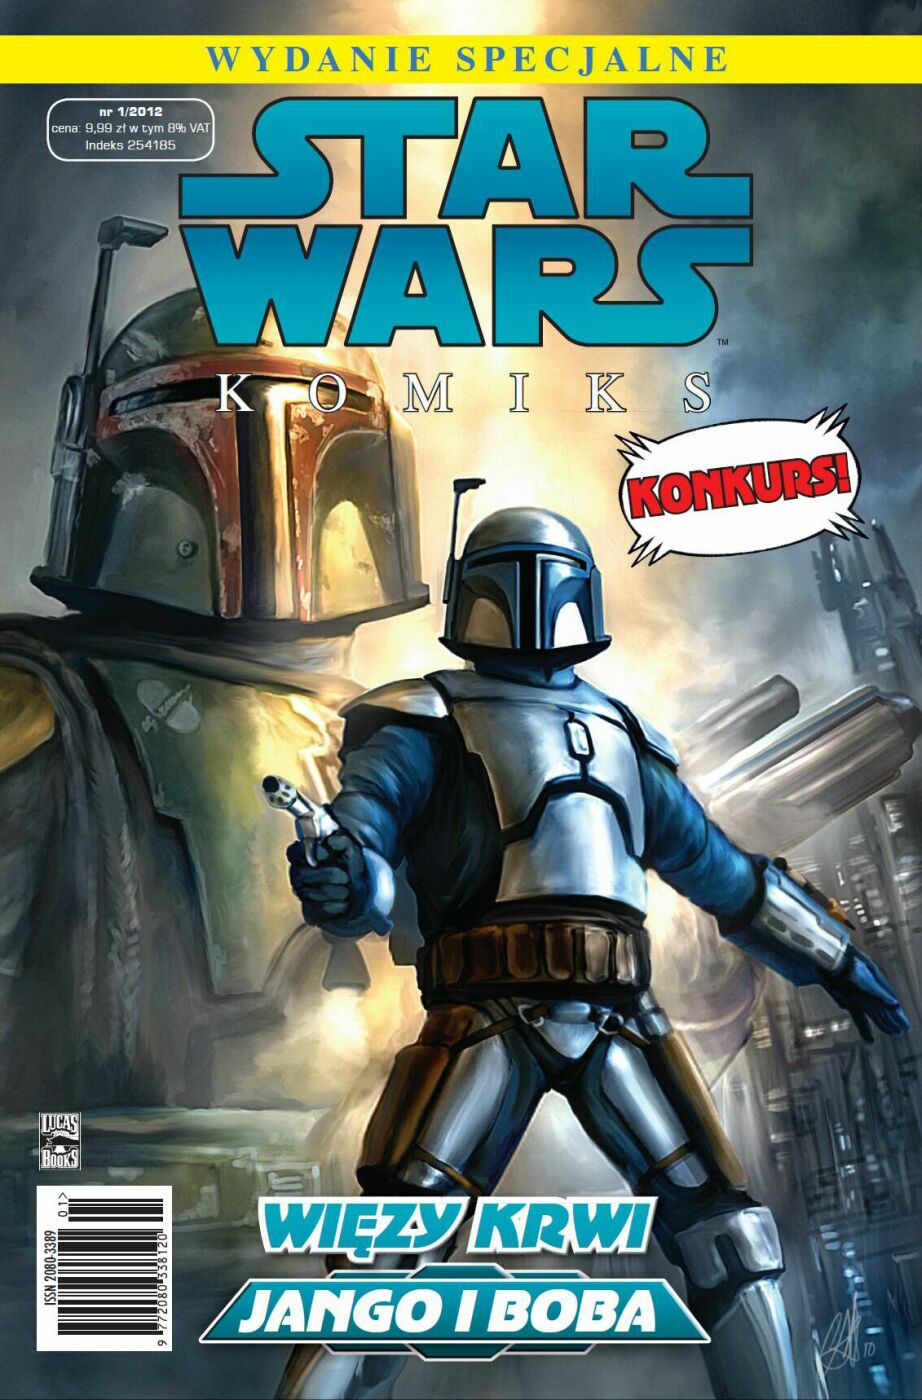 Star Wars Komiks - wydanie specjalne 1/2012